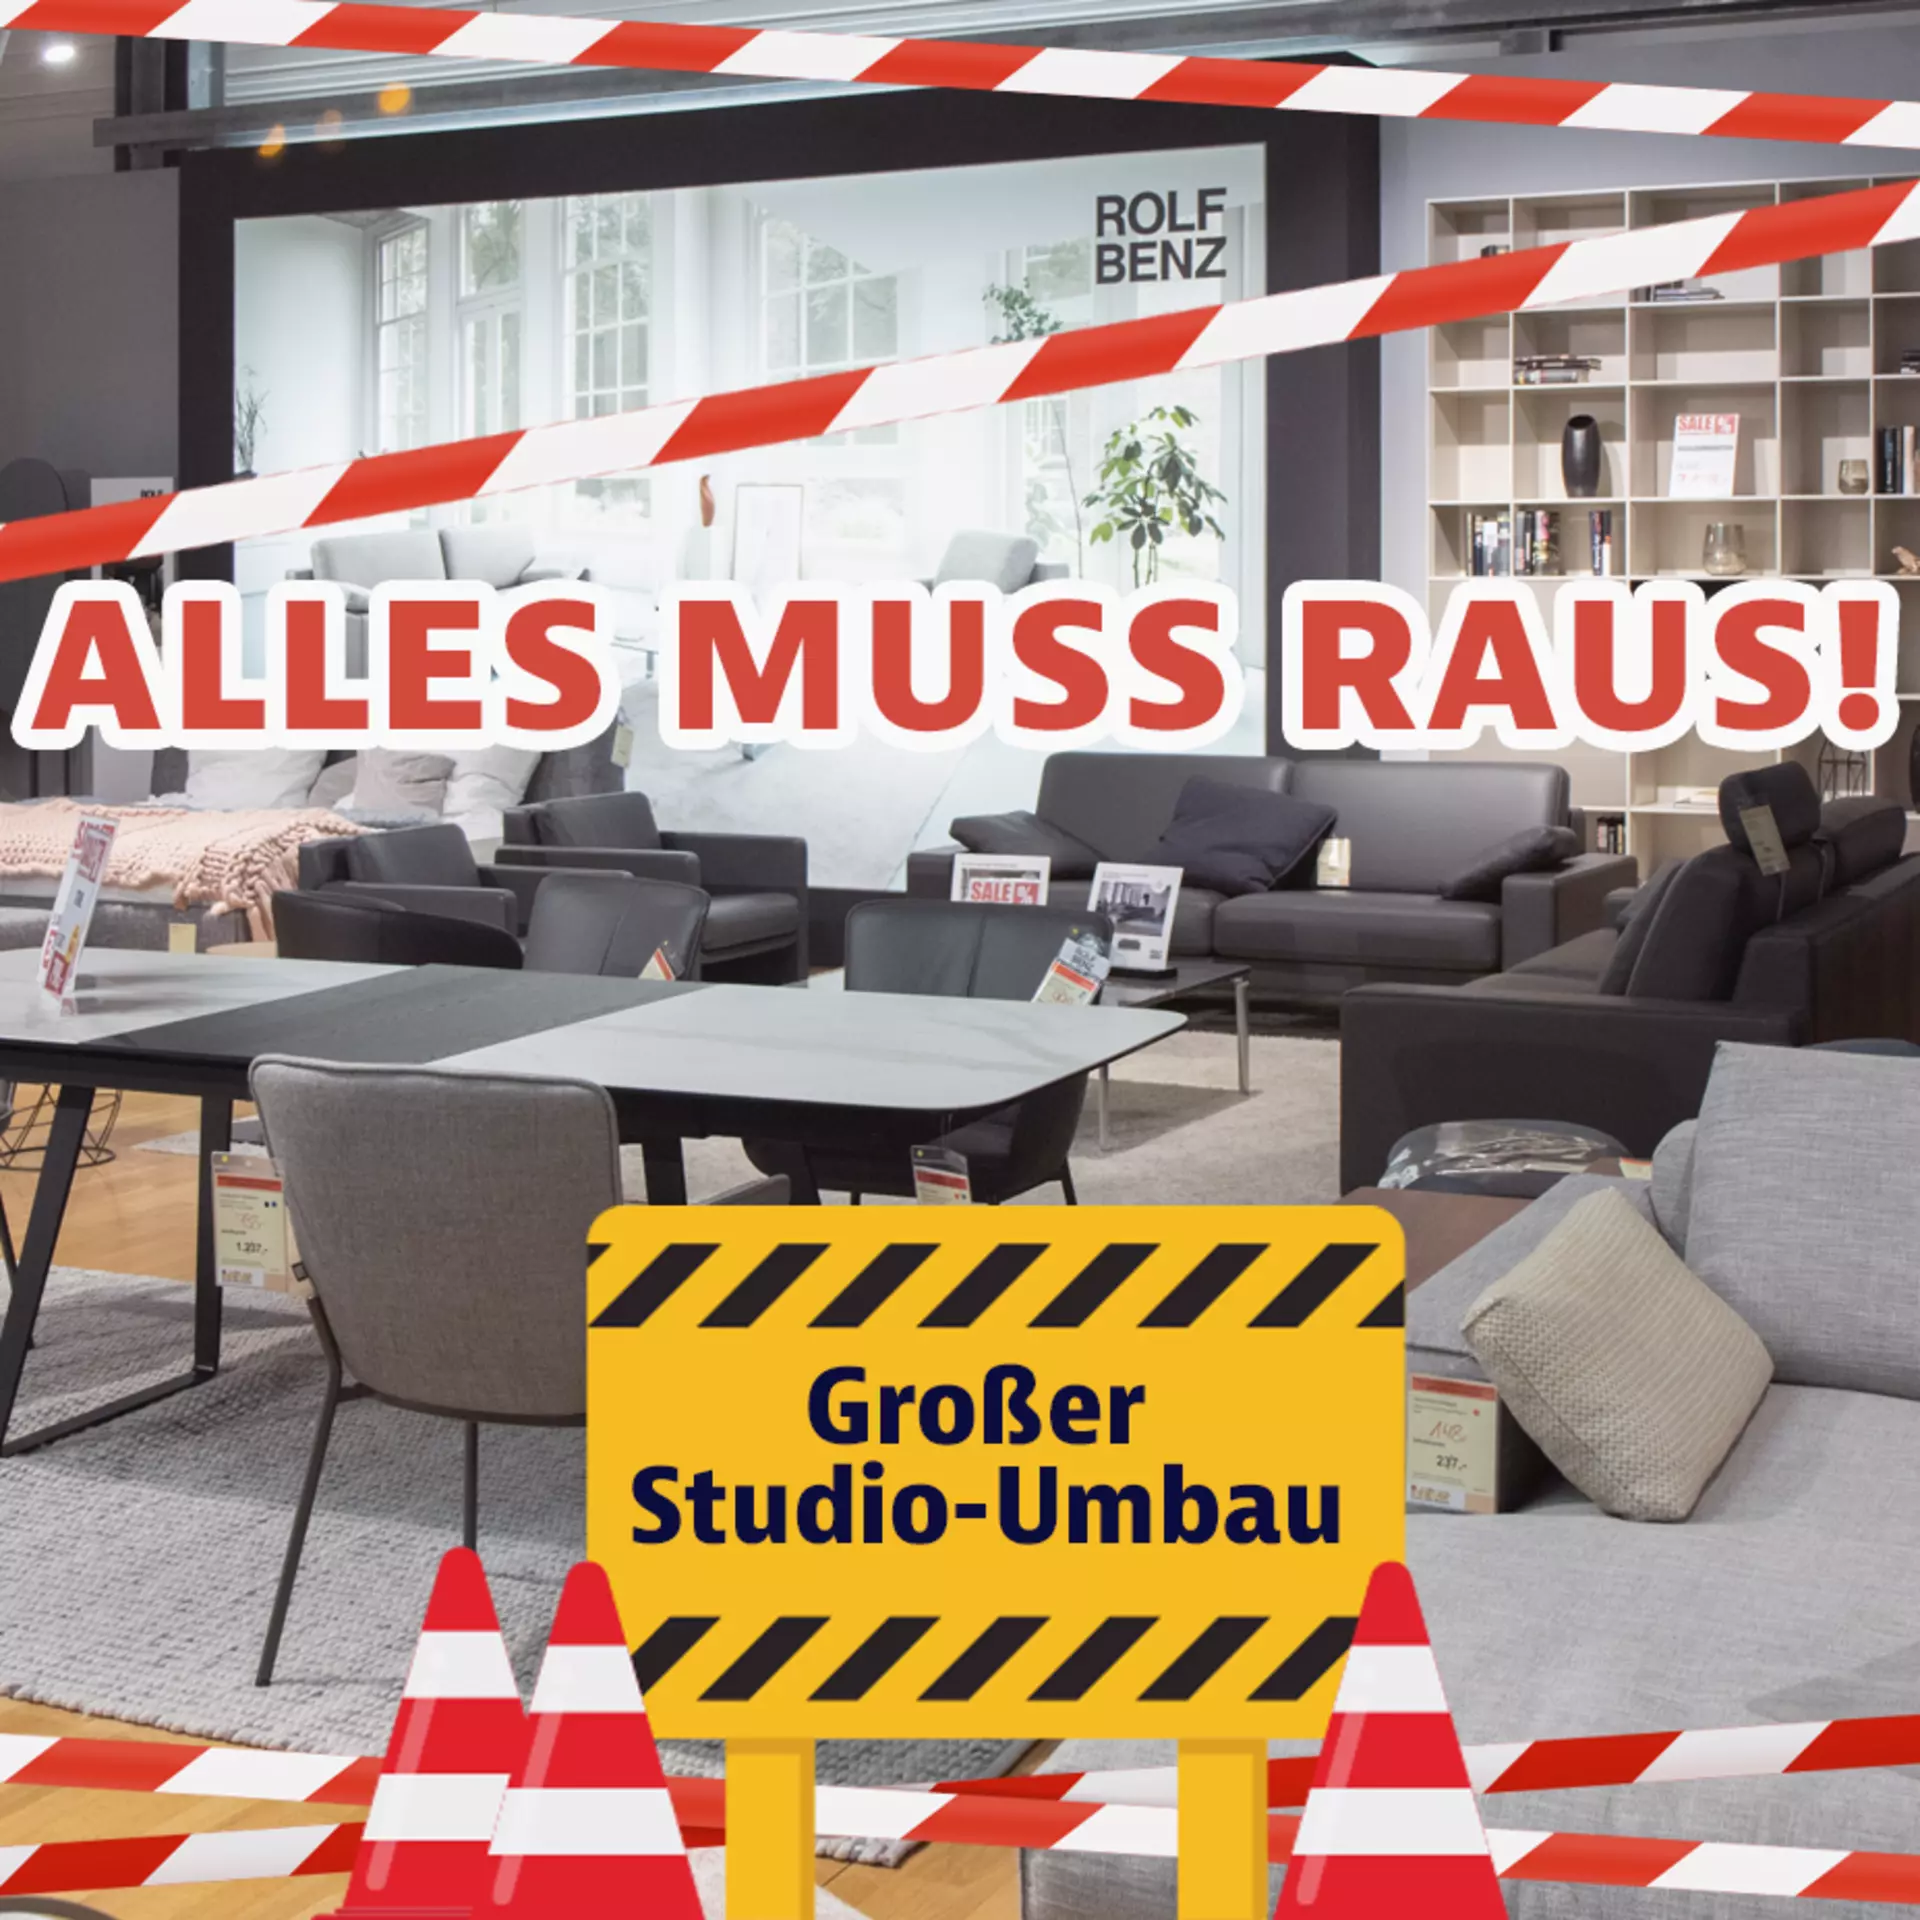 Rolf Benz - Großer Studio-Umbau bei Möbel Inhofer. Jetzt einmalige Möbelschnäppchen sichern!